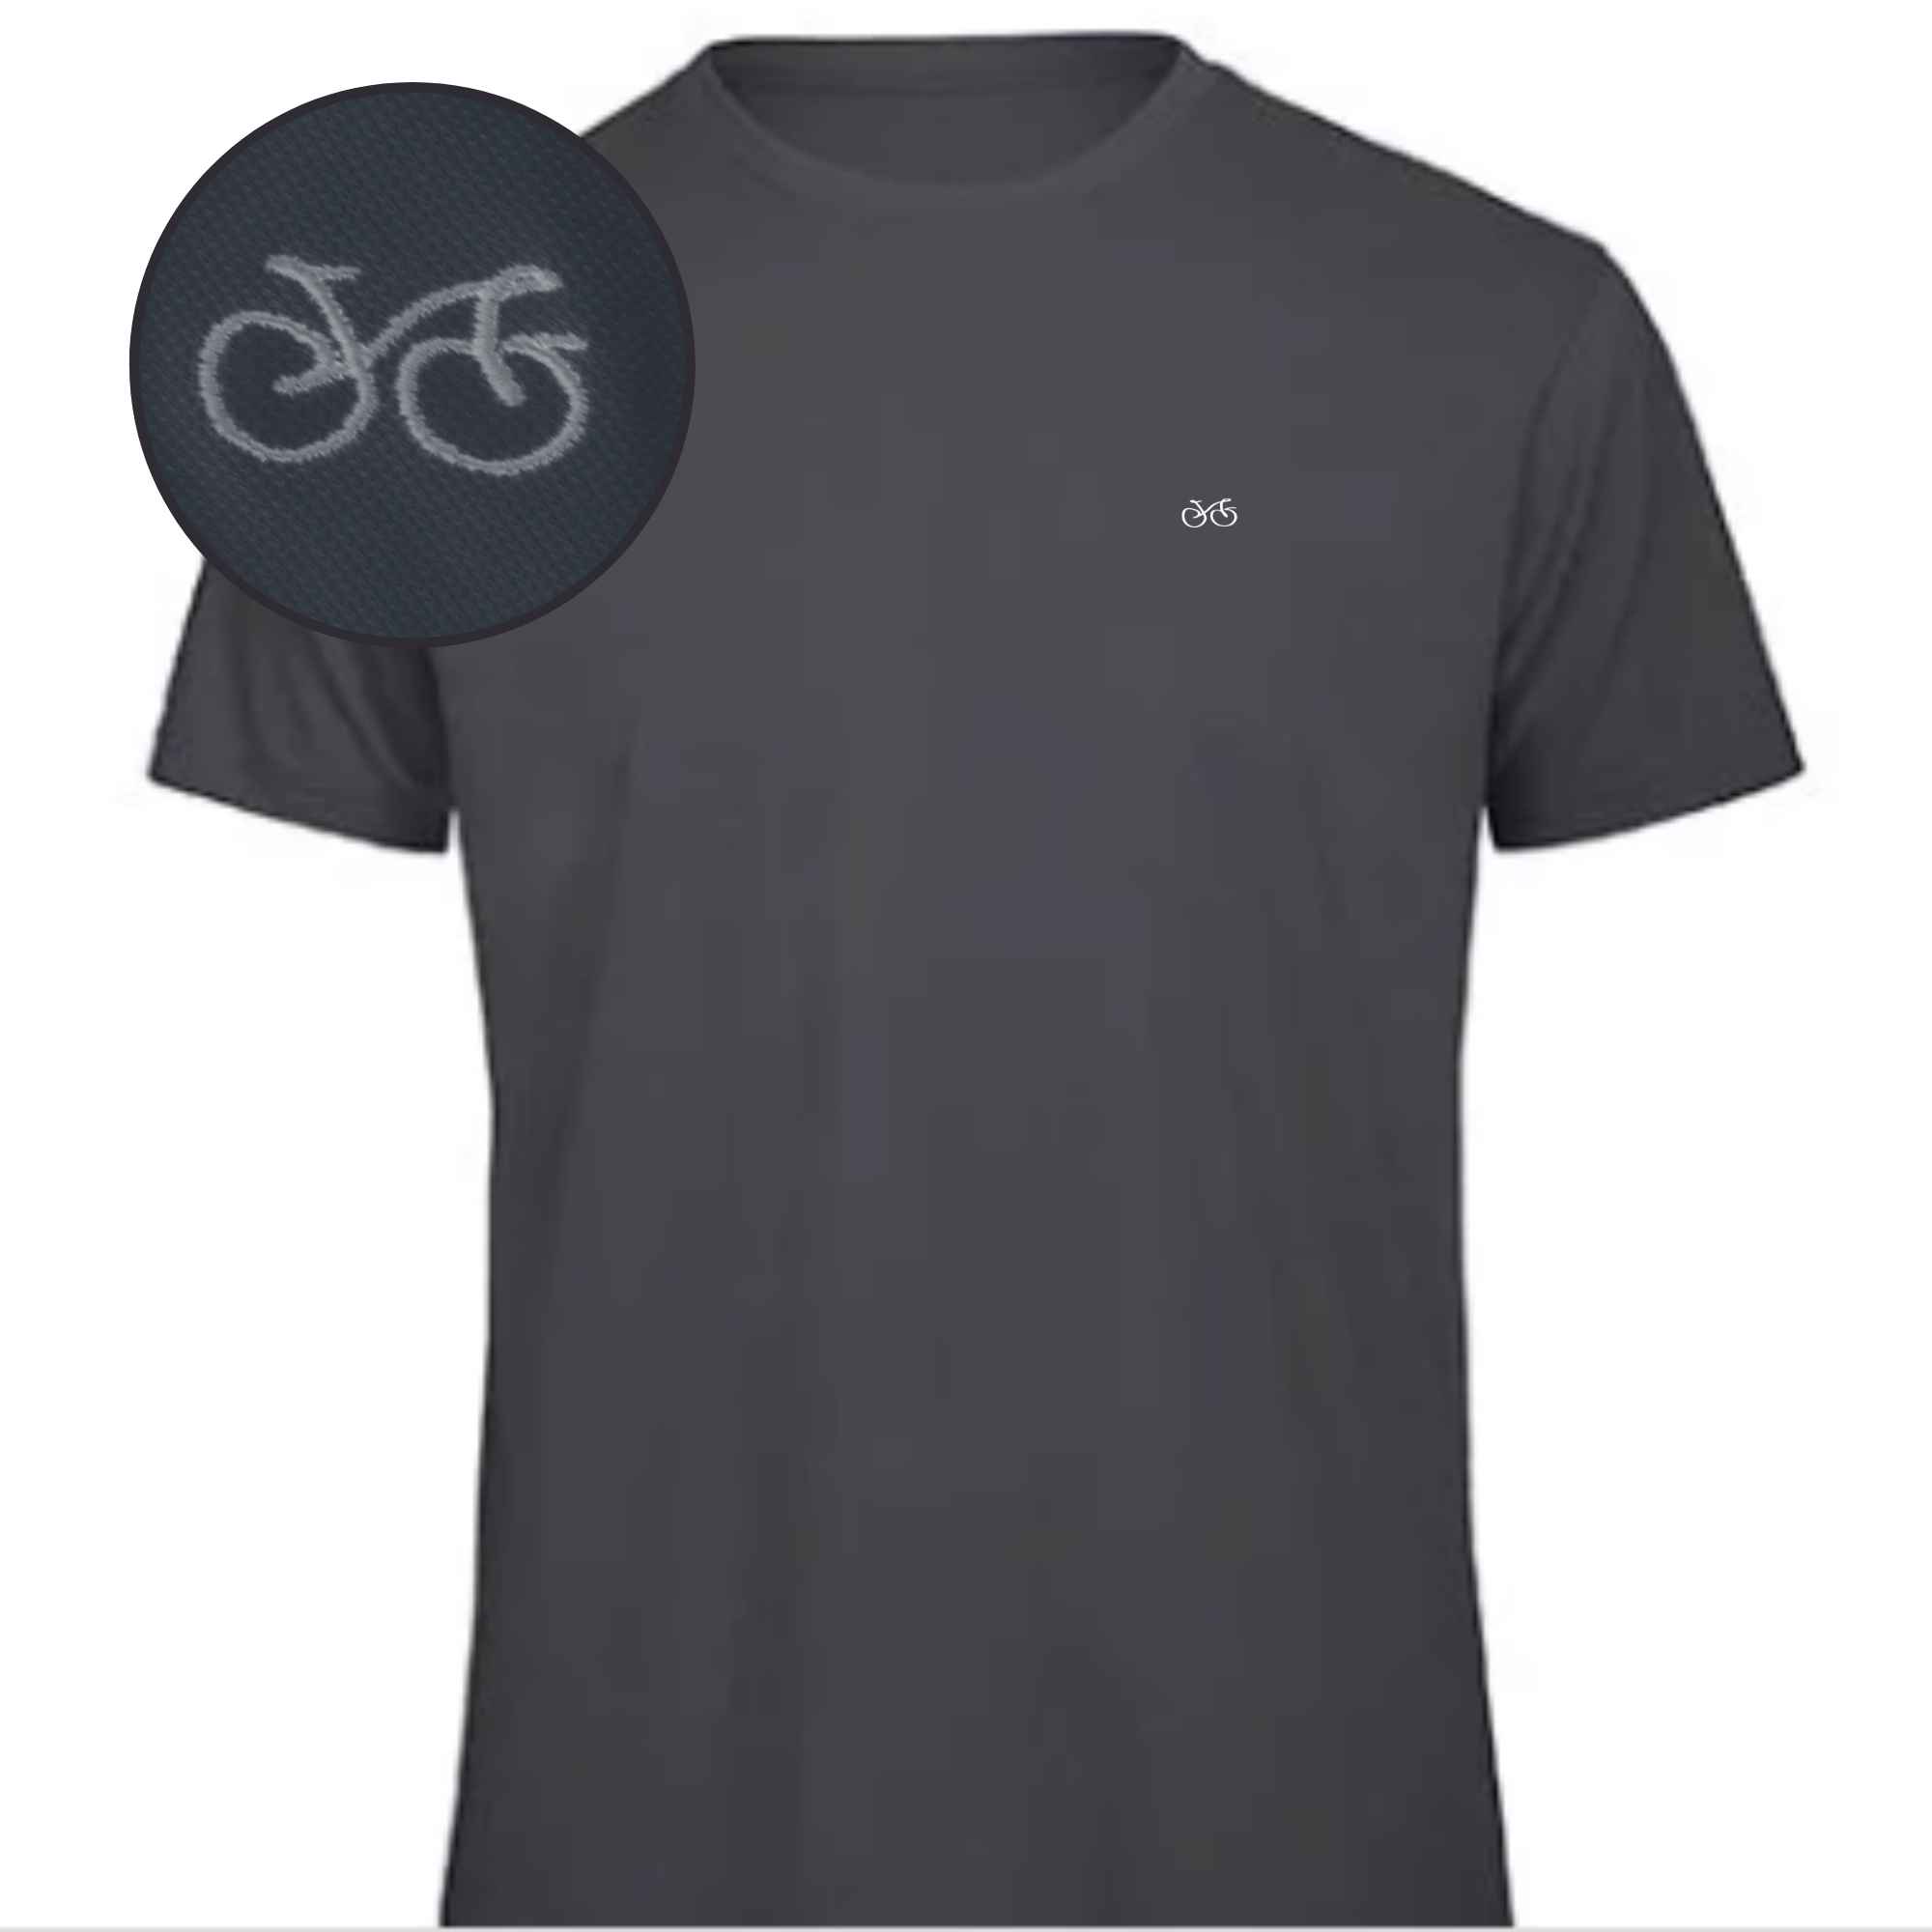 T-Shirt für Fahrradfahrer mit Fahrradsymbol auf die Brust gestickt in Farbe Blau